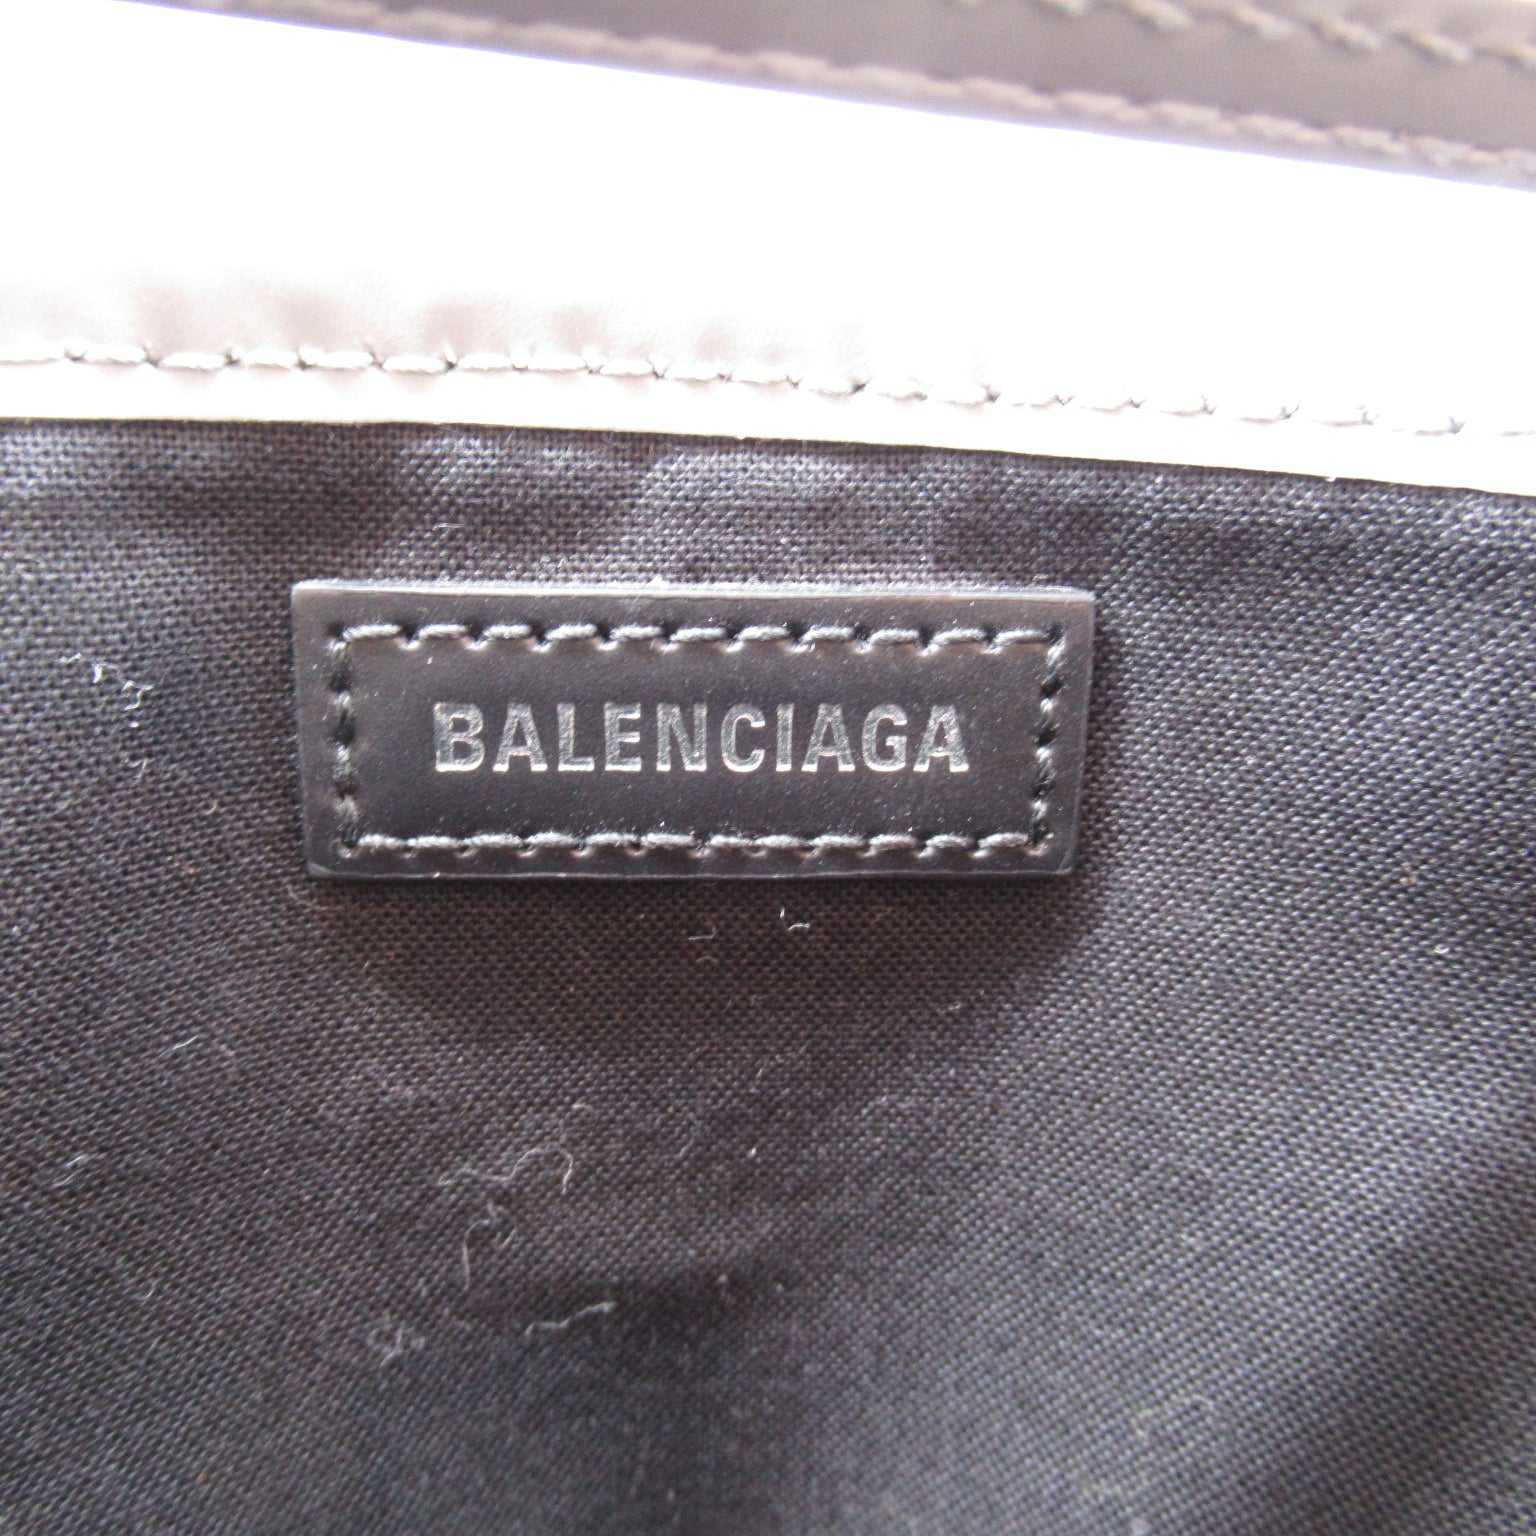 BALENCIAGA BALENCIAGA CABAS S TORT BAG TORT BAG TORT BAG LADY GREY